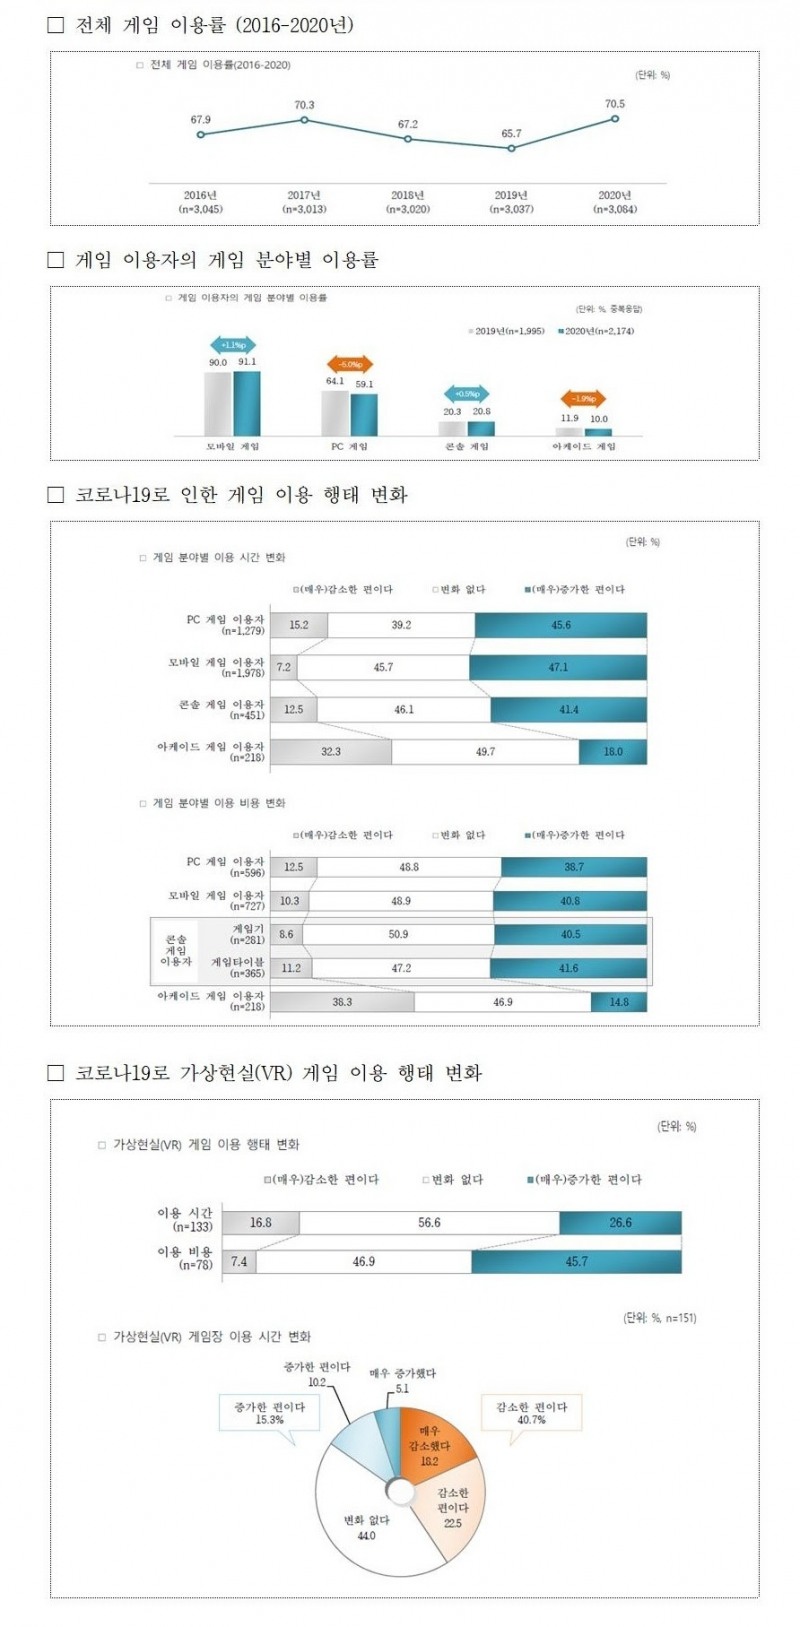 [이슈] 韓 게임이용률 70.5%…모바일 비중 가장 높아